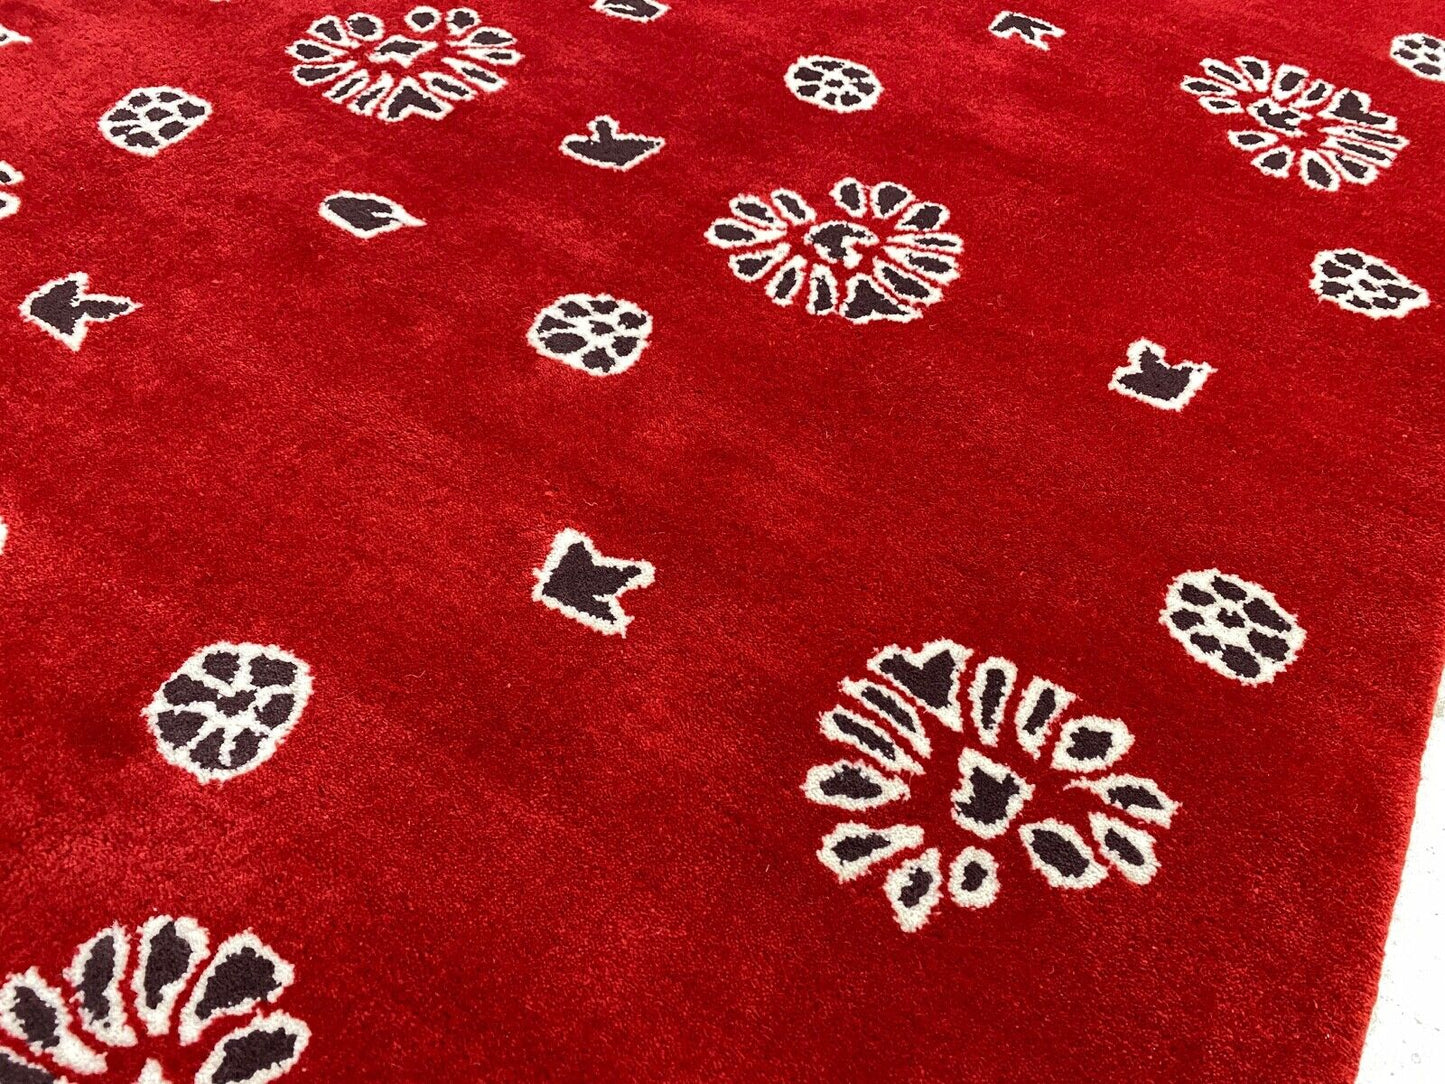 Rot Teppich 200X200 CM 100% Wolle Handarbeit Designer Orientteppich WT2